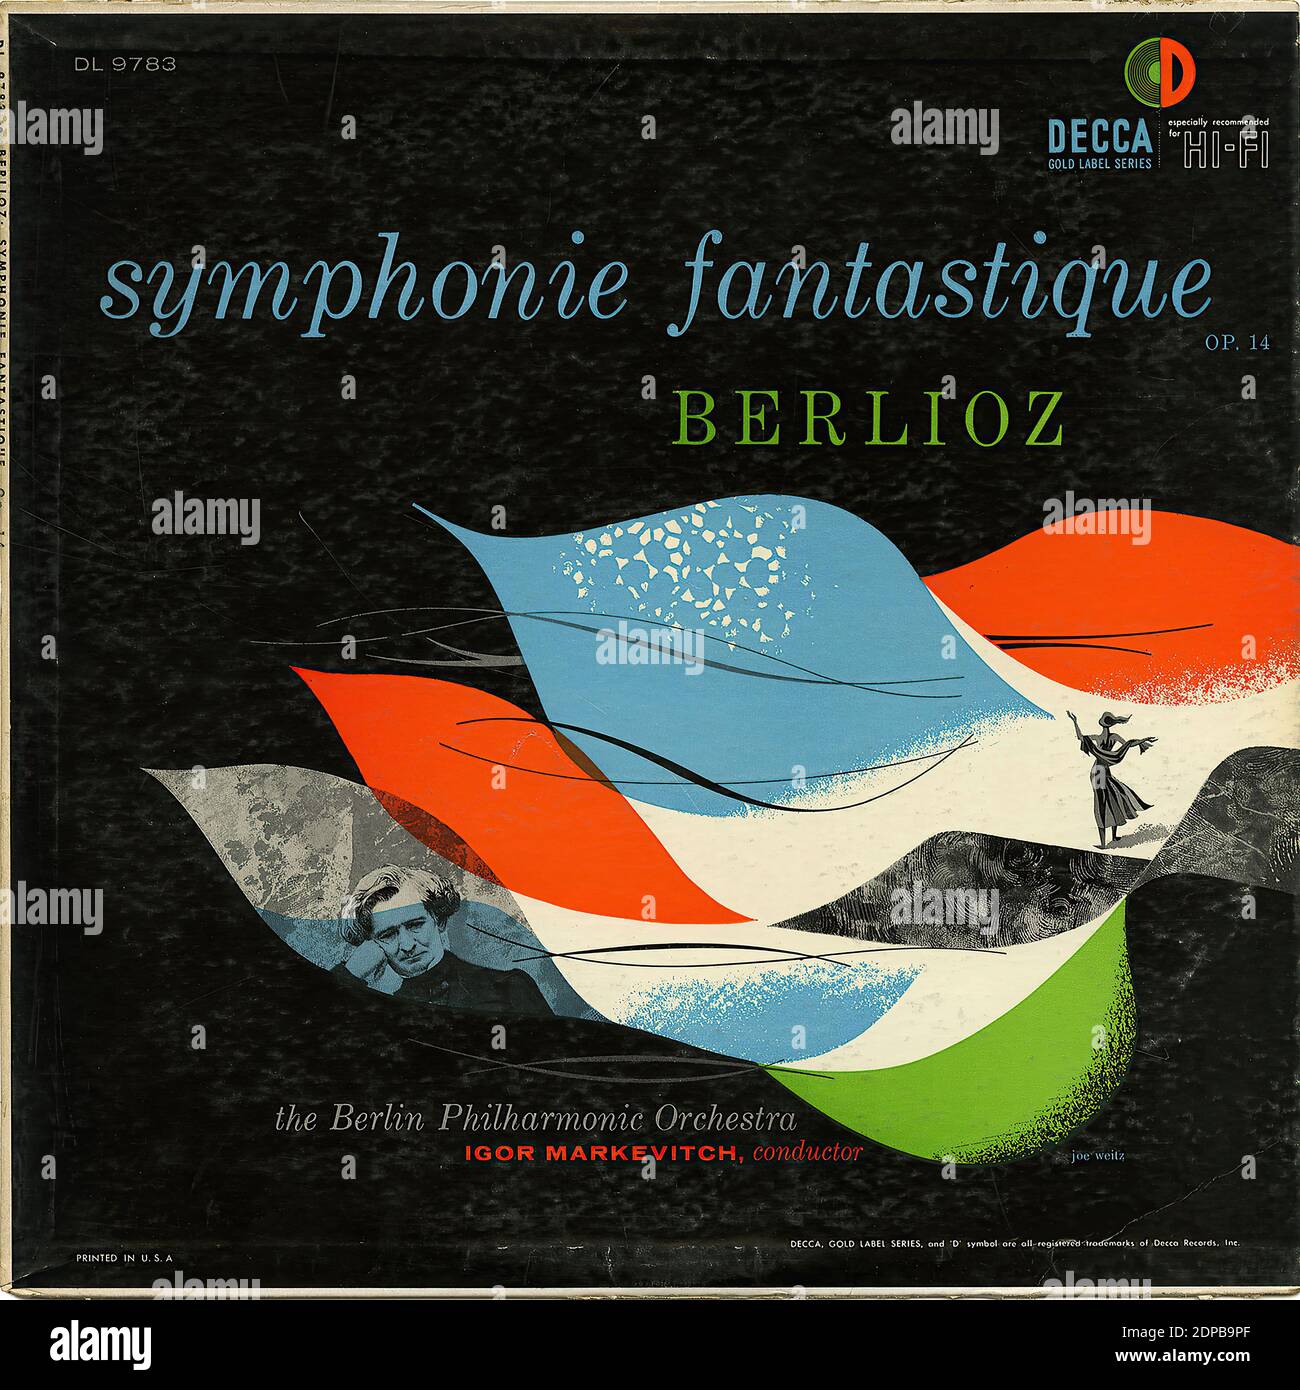 Symphonie Fantastique - Vintage Record Cover Stock Photo